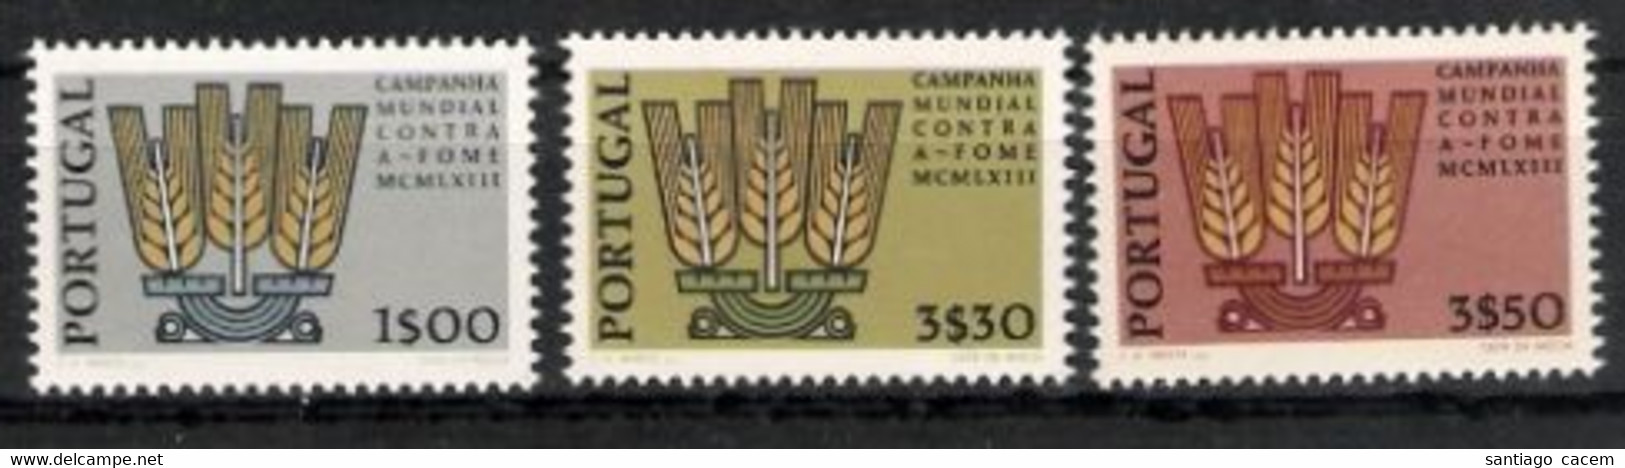 Portugal - 1963 Campanha Mundial Contra Fome** - Nuevos